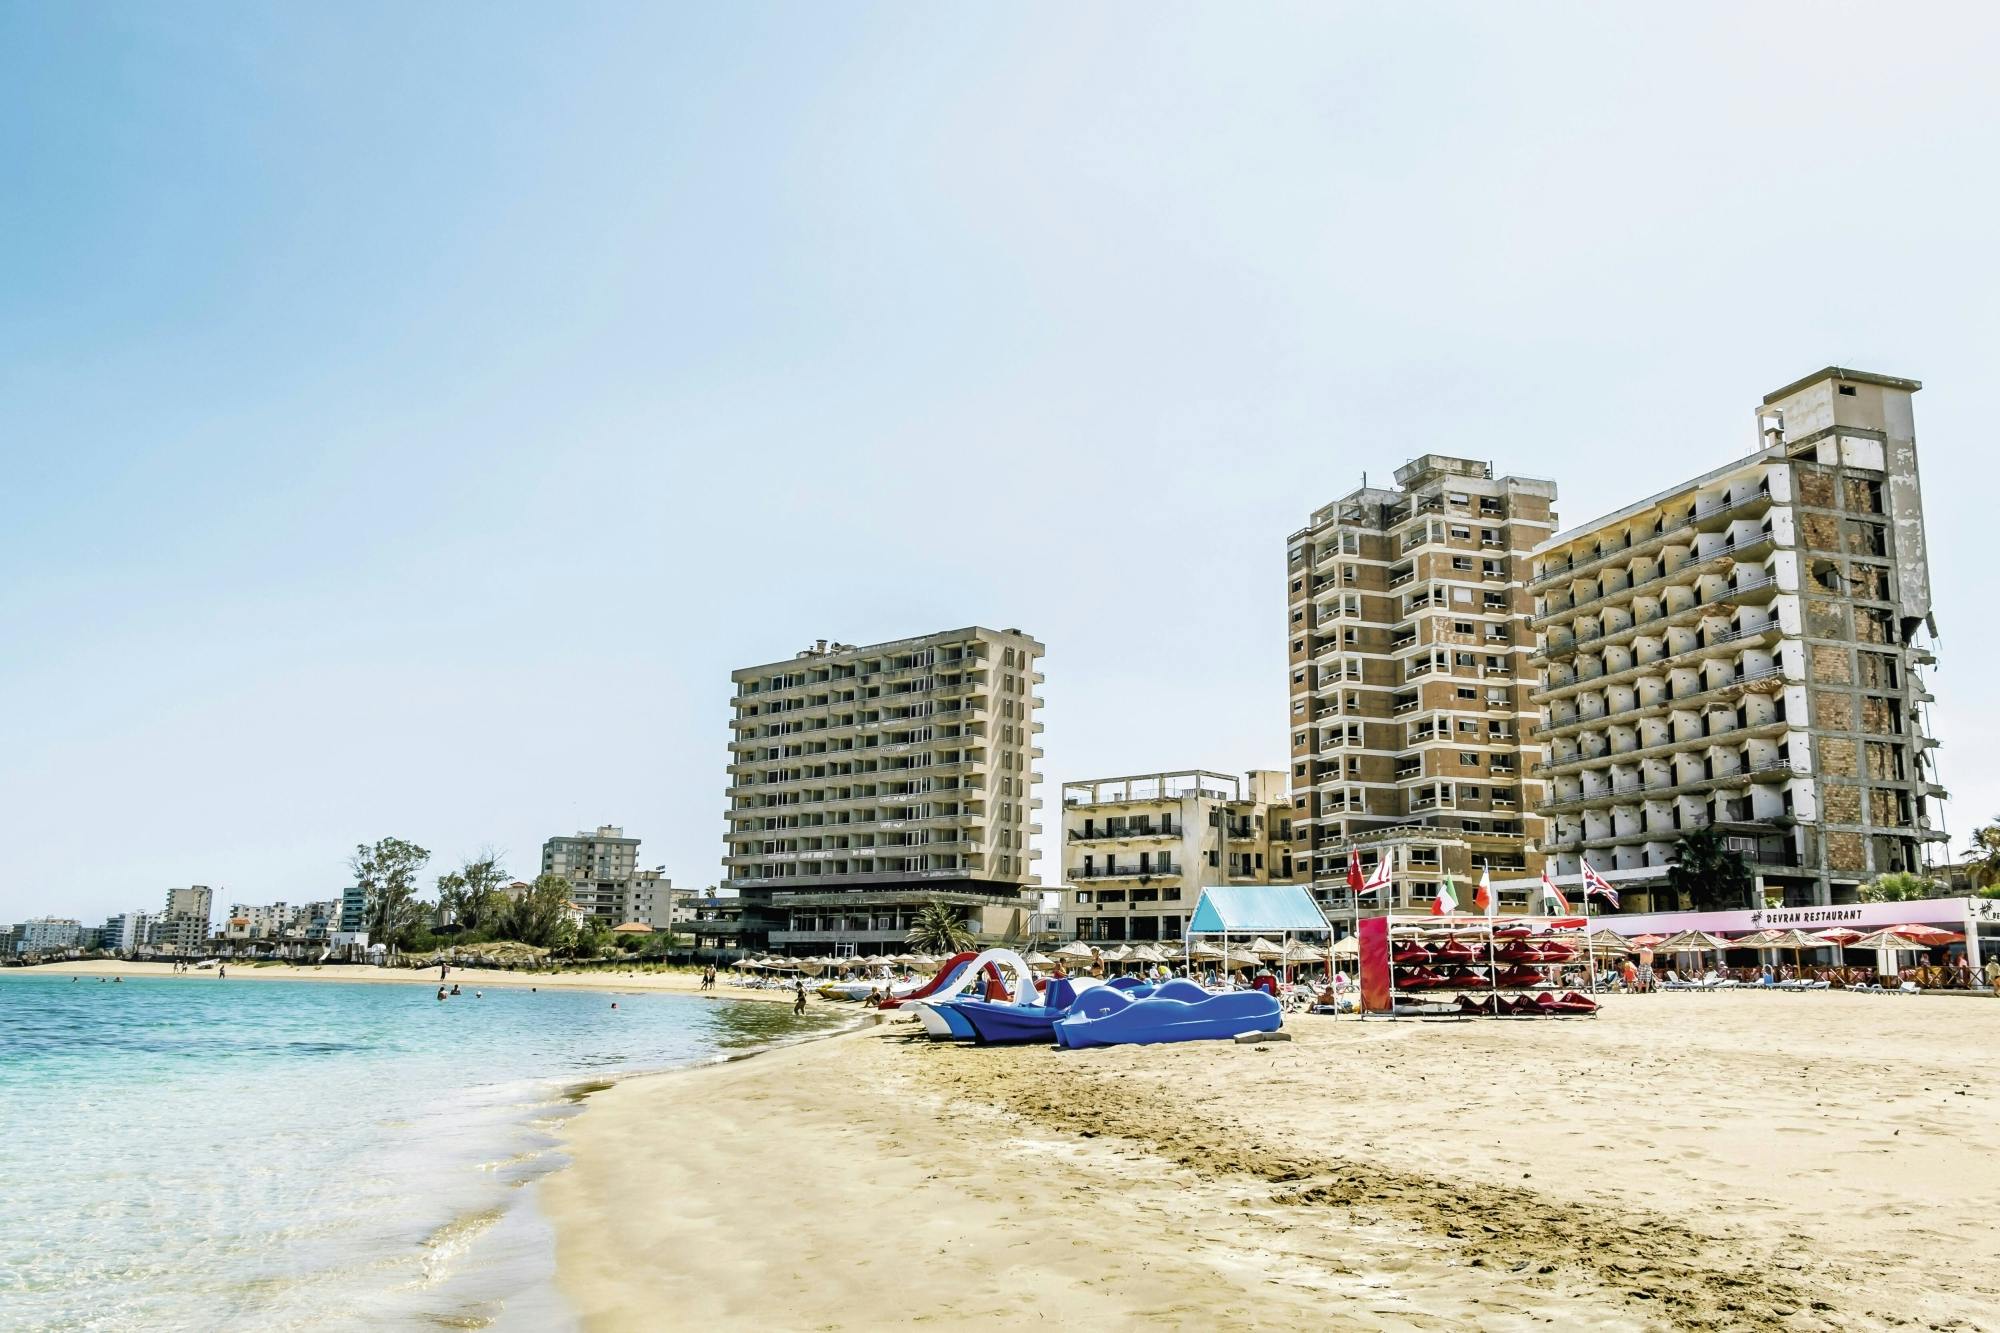 Excursión a Famagusta y visita a la playa de Constantia con guía local